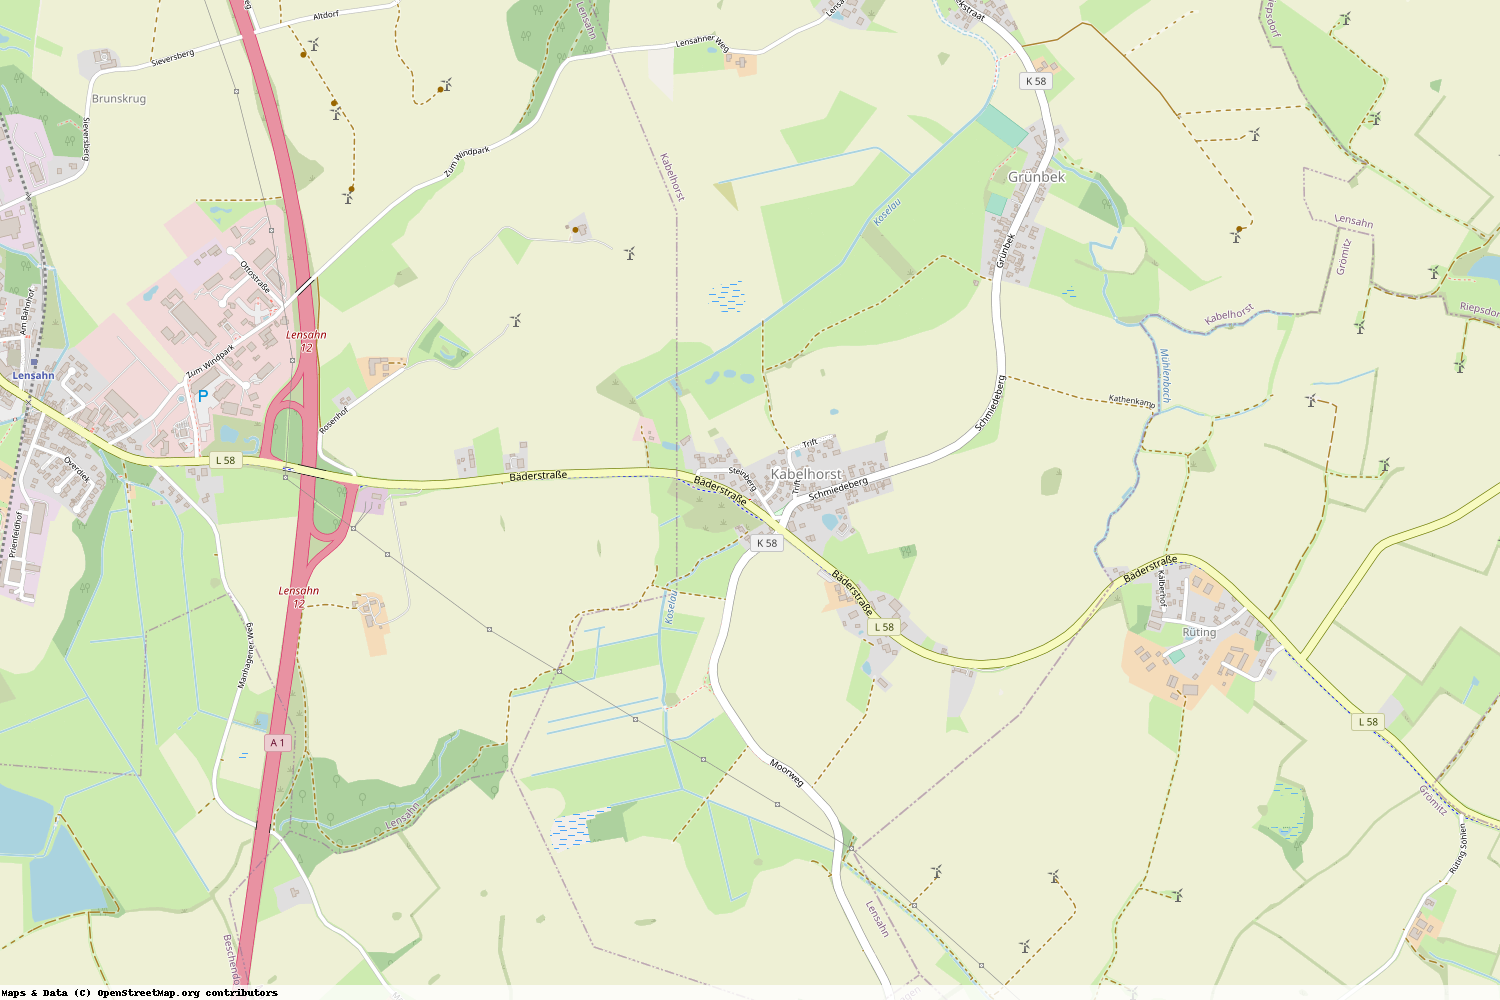 Ist gerade Stromausfall in Schleswig-Holstein - Ostholstein - Kabelhorst?